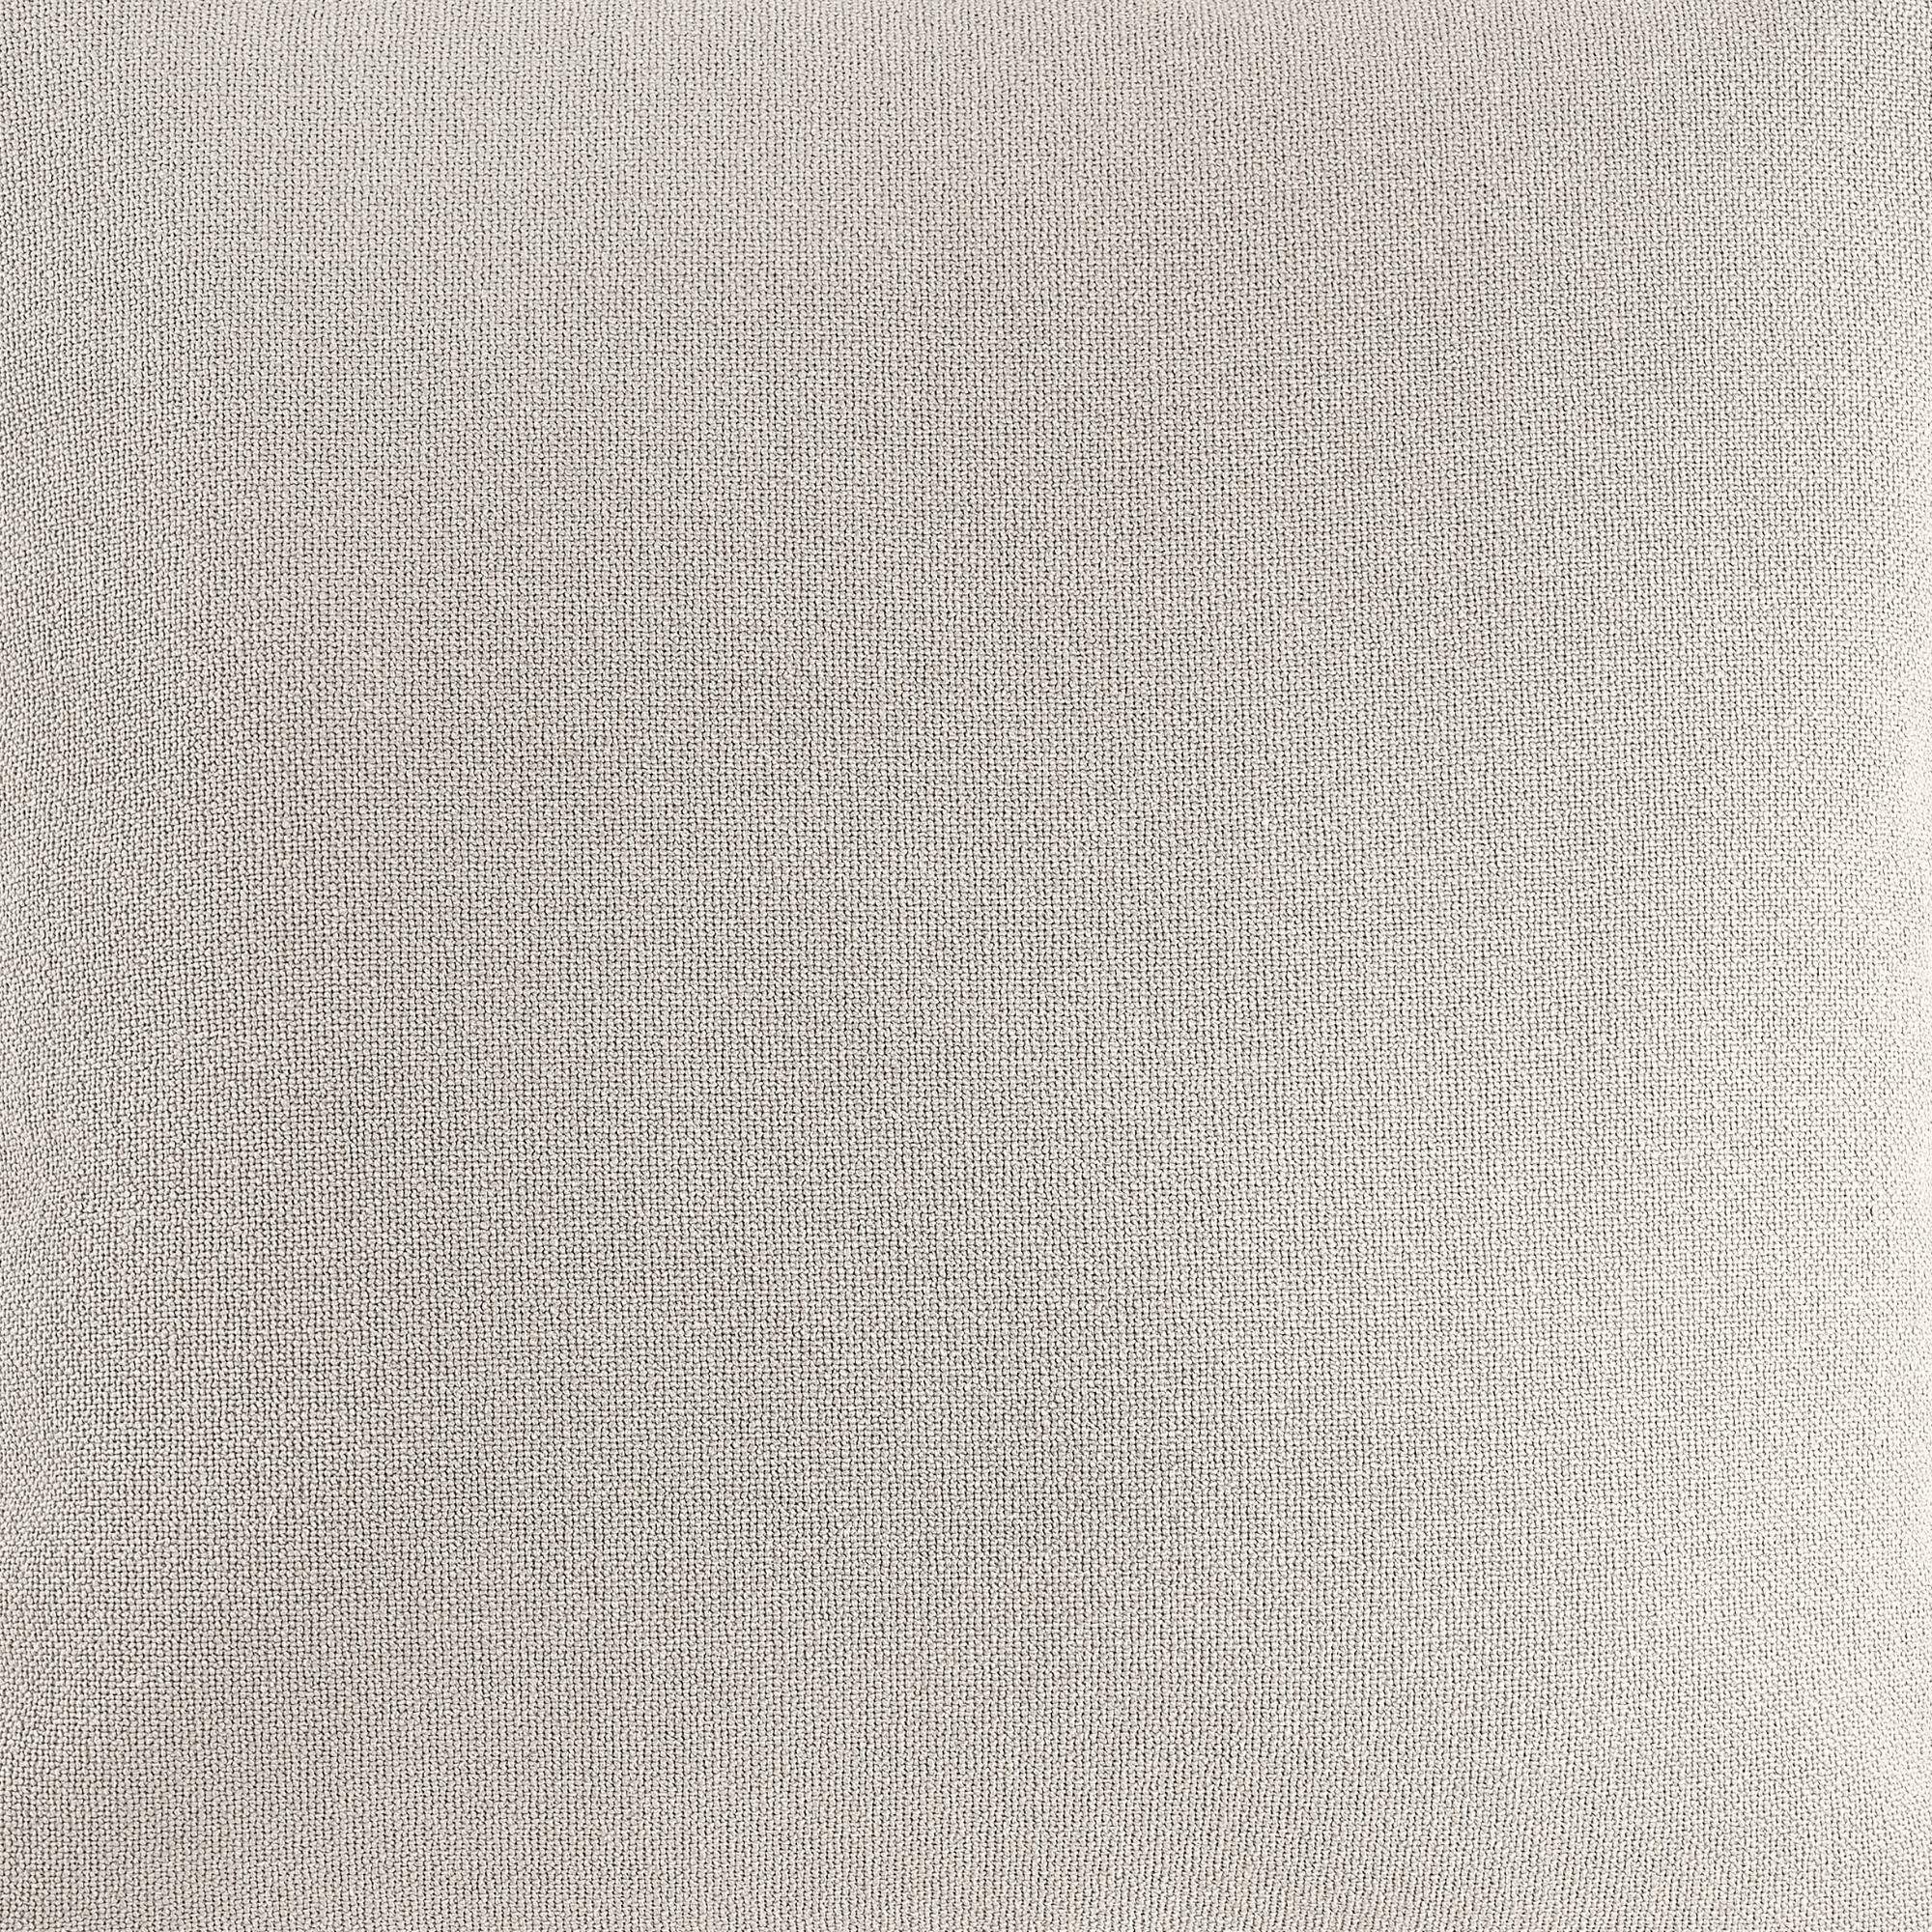 REALLaxx Floyd, mit 50x50cm, Füllung Dekokissen in Offwhite Leinenoptik, Sofakissen, Bezug